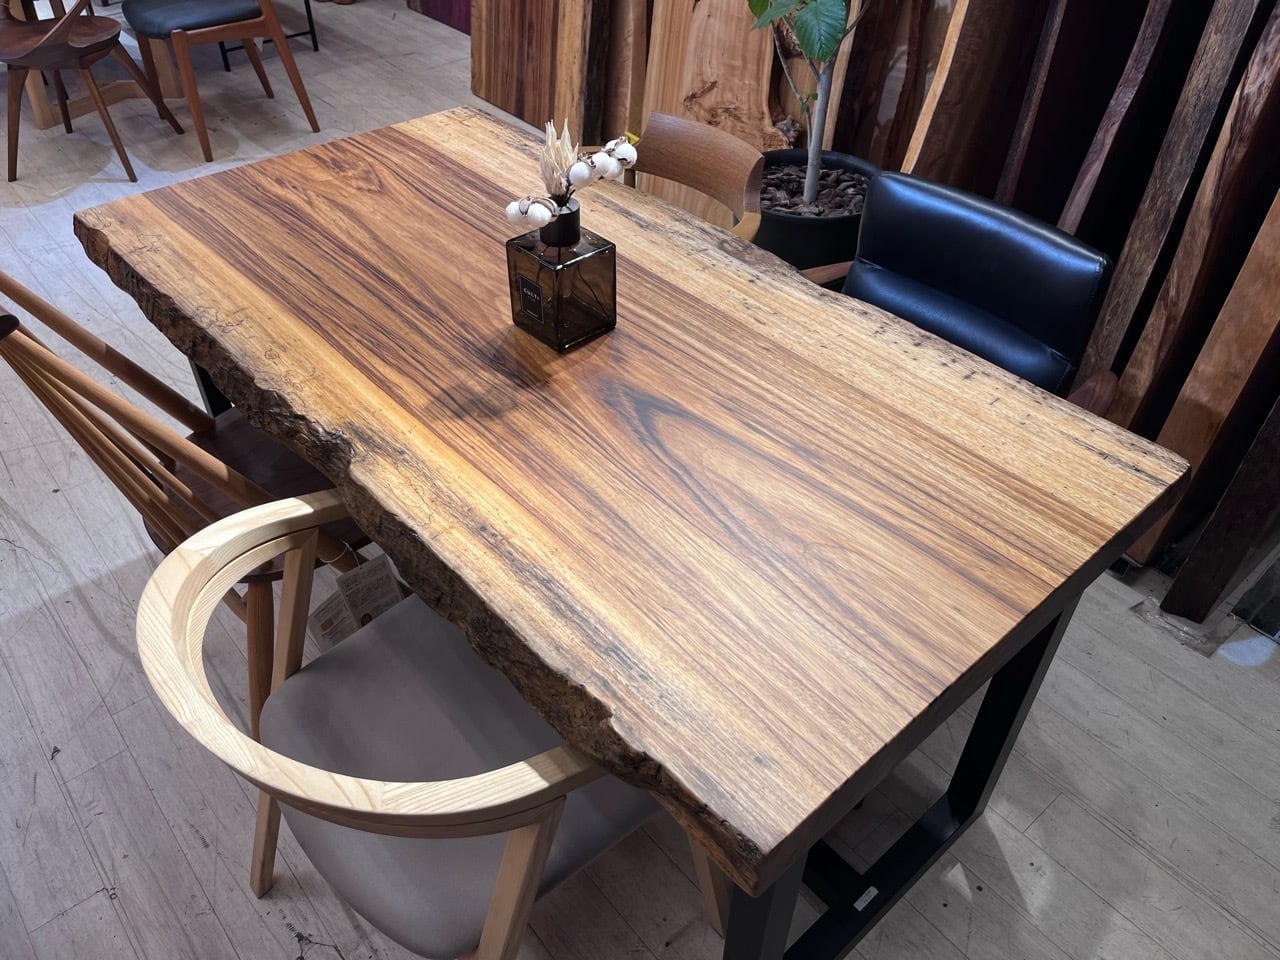 千年家具 - 無垢一枚板テーブル・ダイニングテーブル専門店